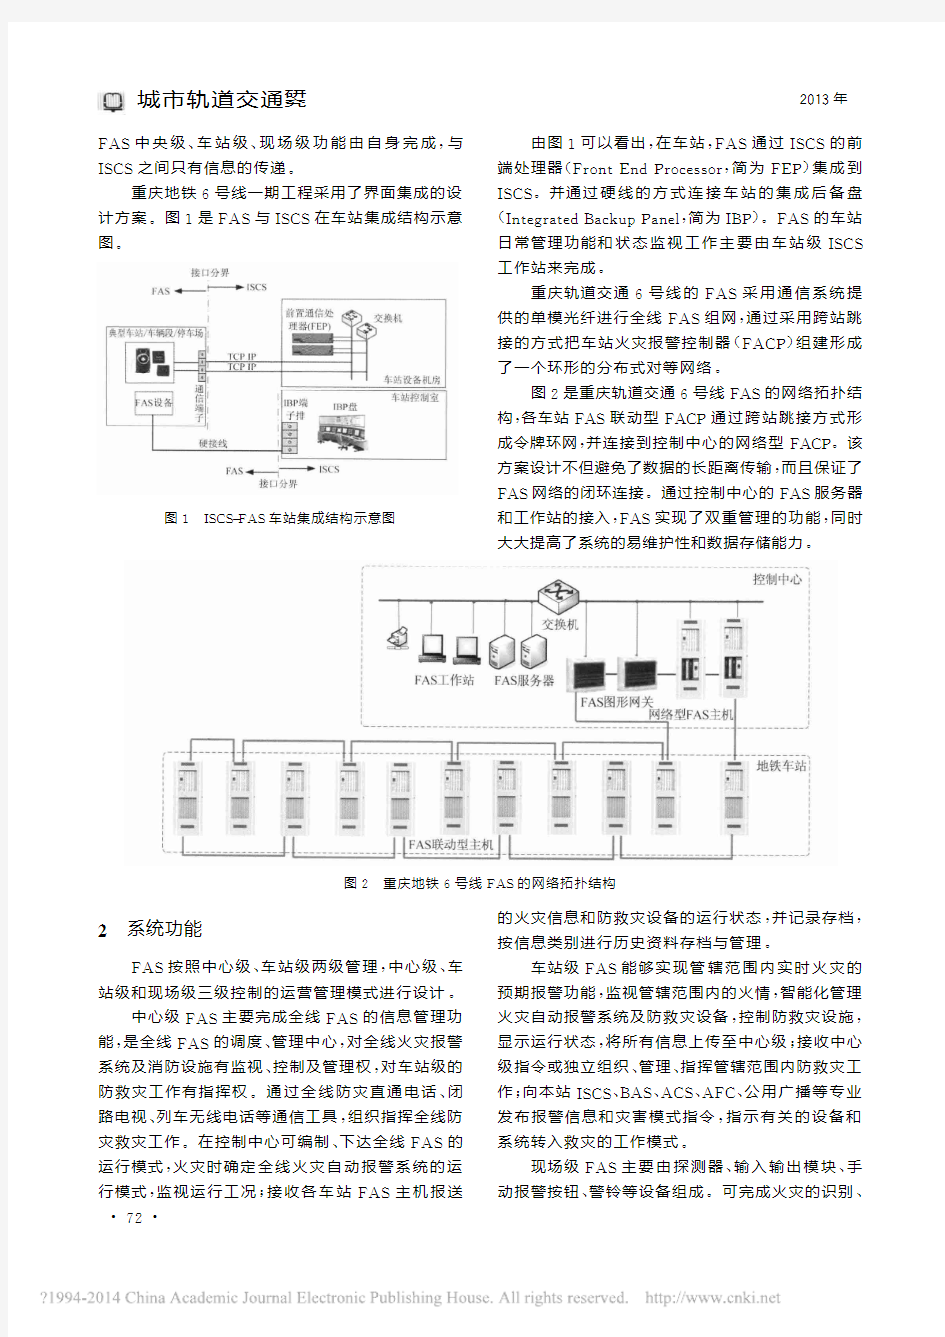 地铁火灾自动报警系统设计与应用_张道